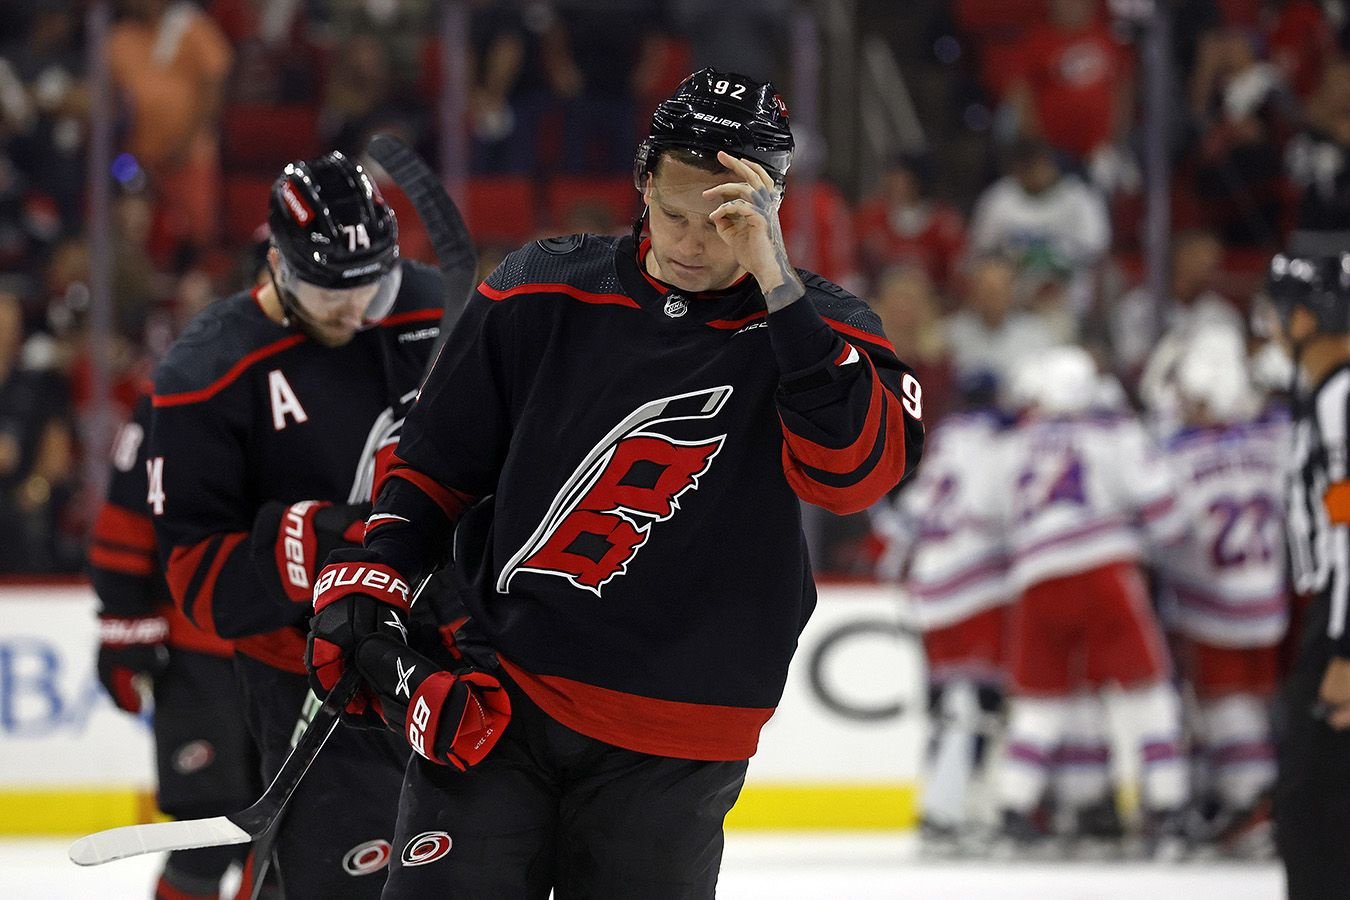 Евгений Кузнецов выставлен на безусловный драфт отказов в НХЛ. Итоги дня в хоккее